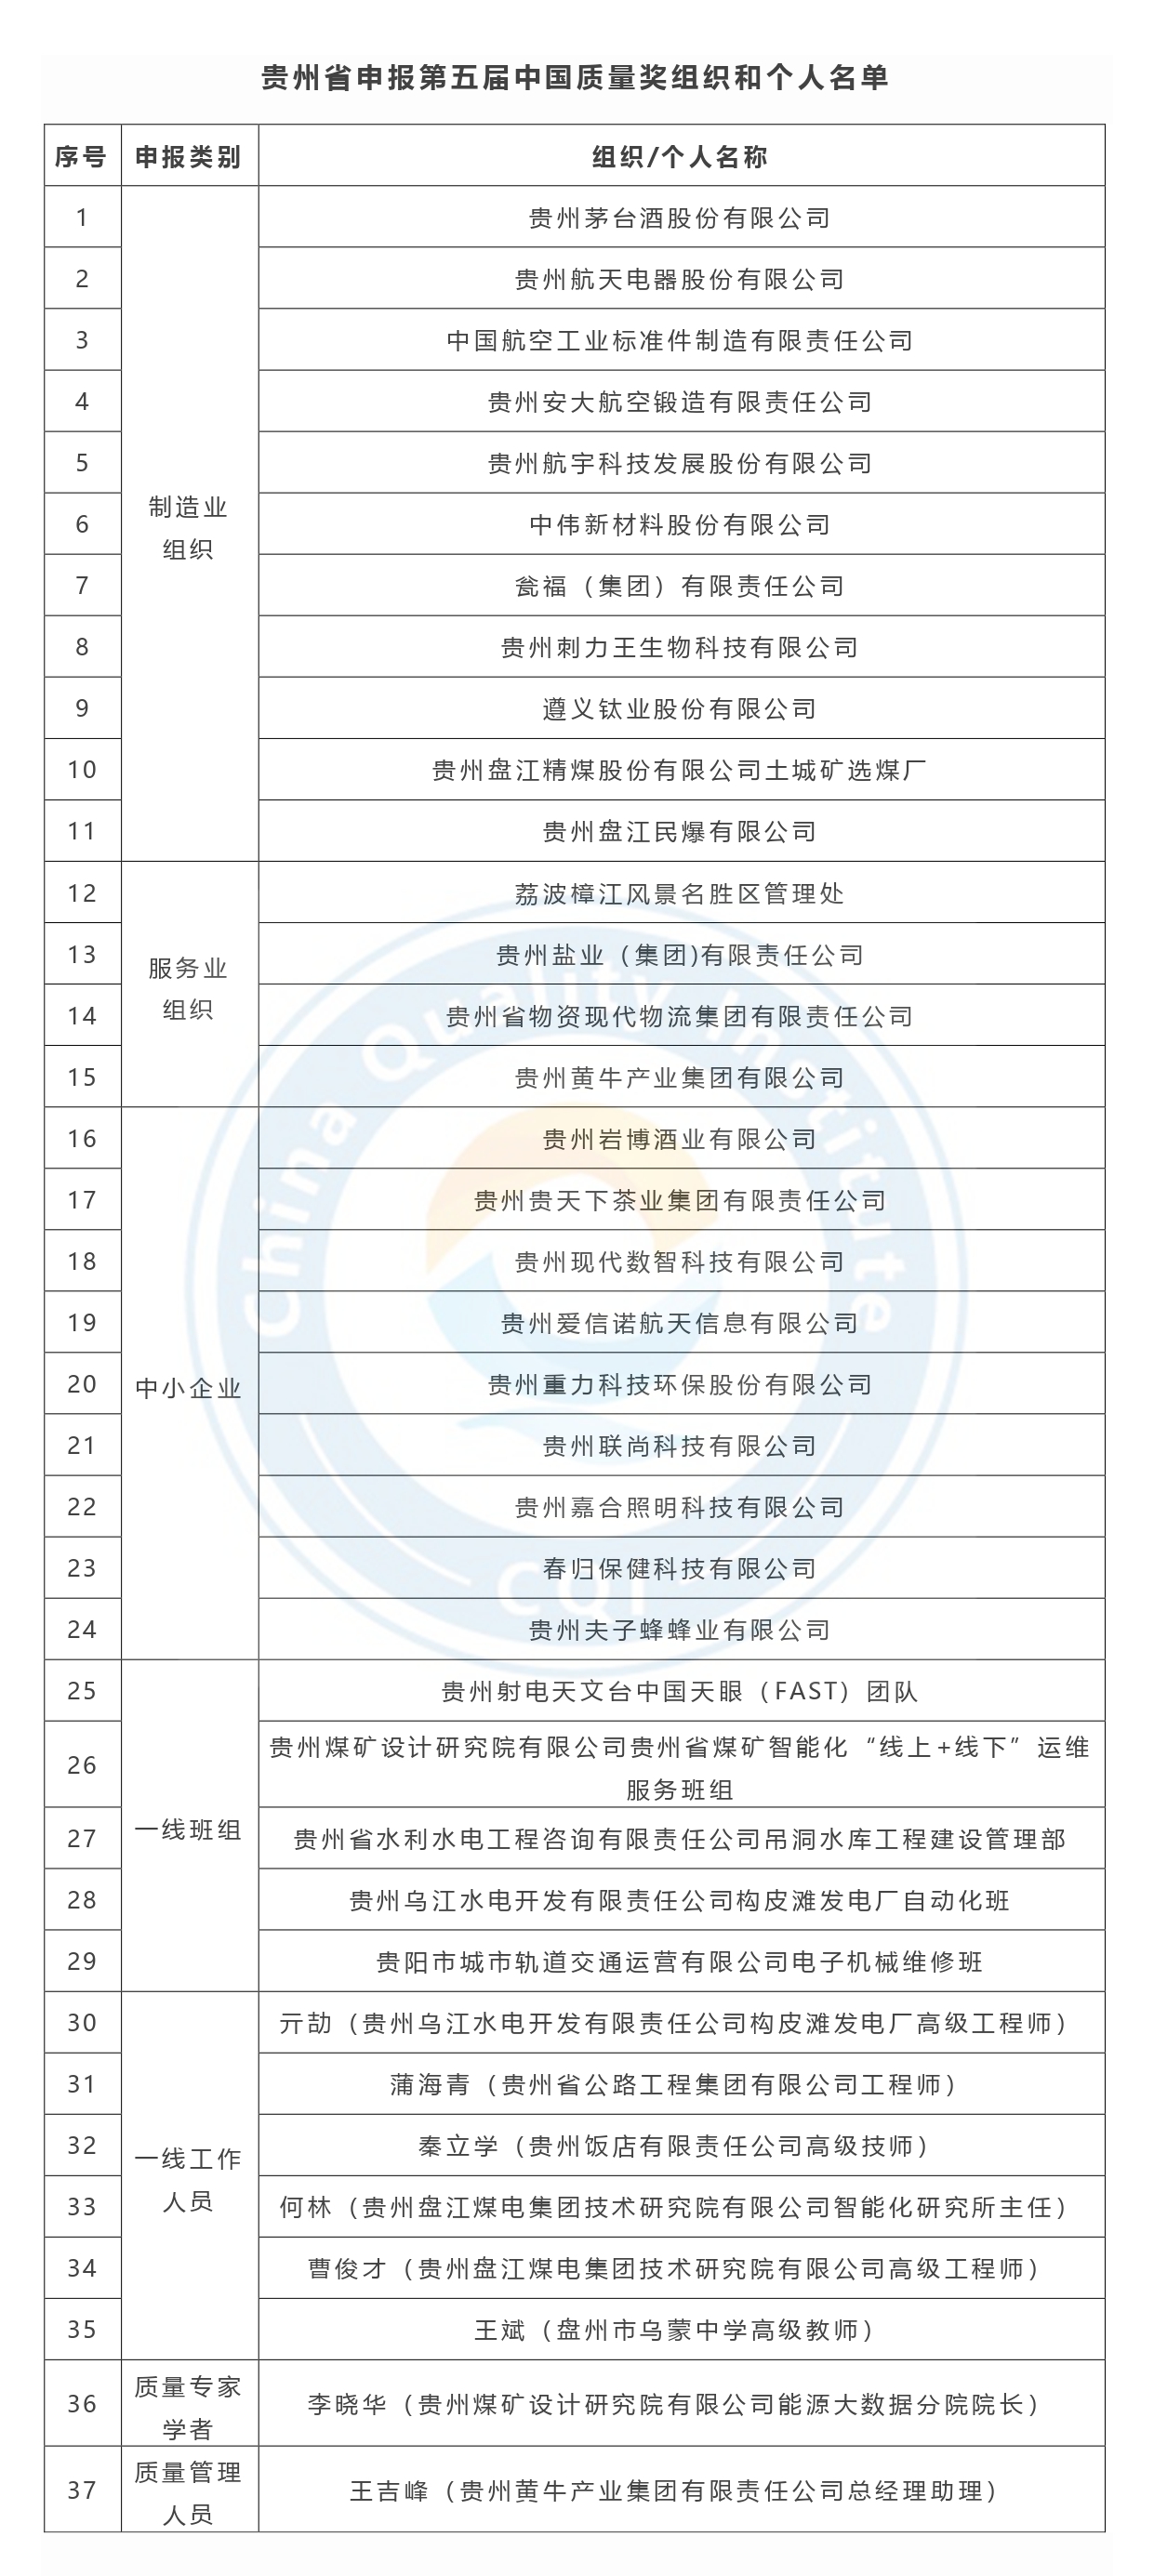 第五届中国质量奖申报名单公示-贵州省.jpg